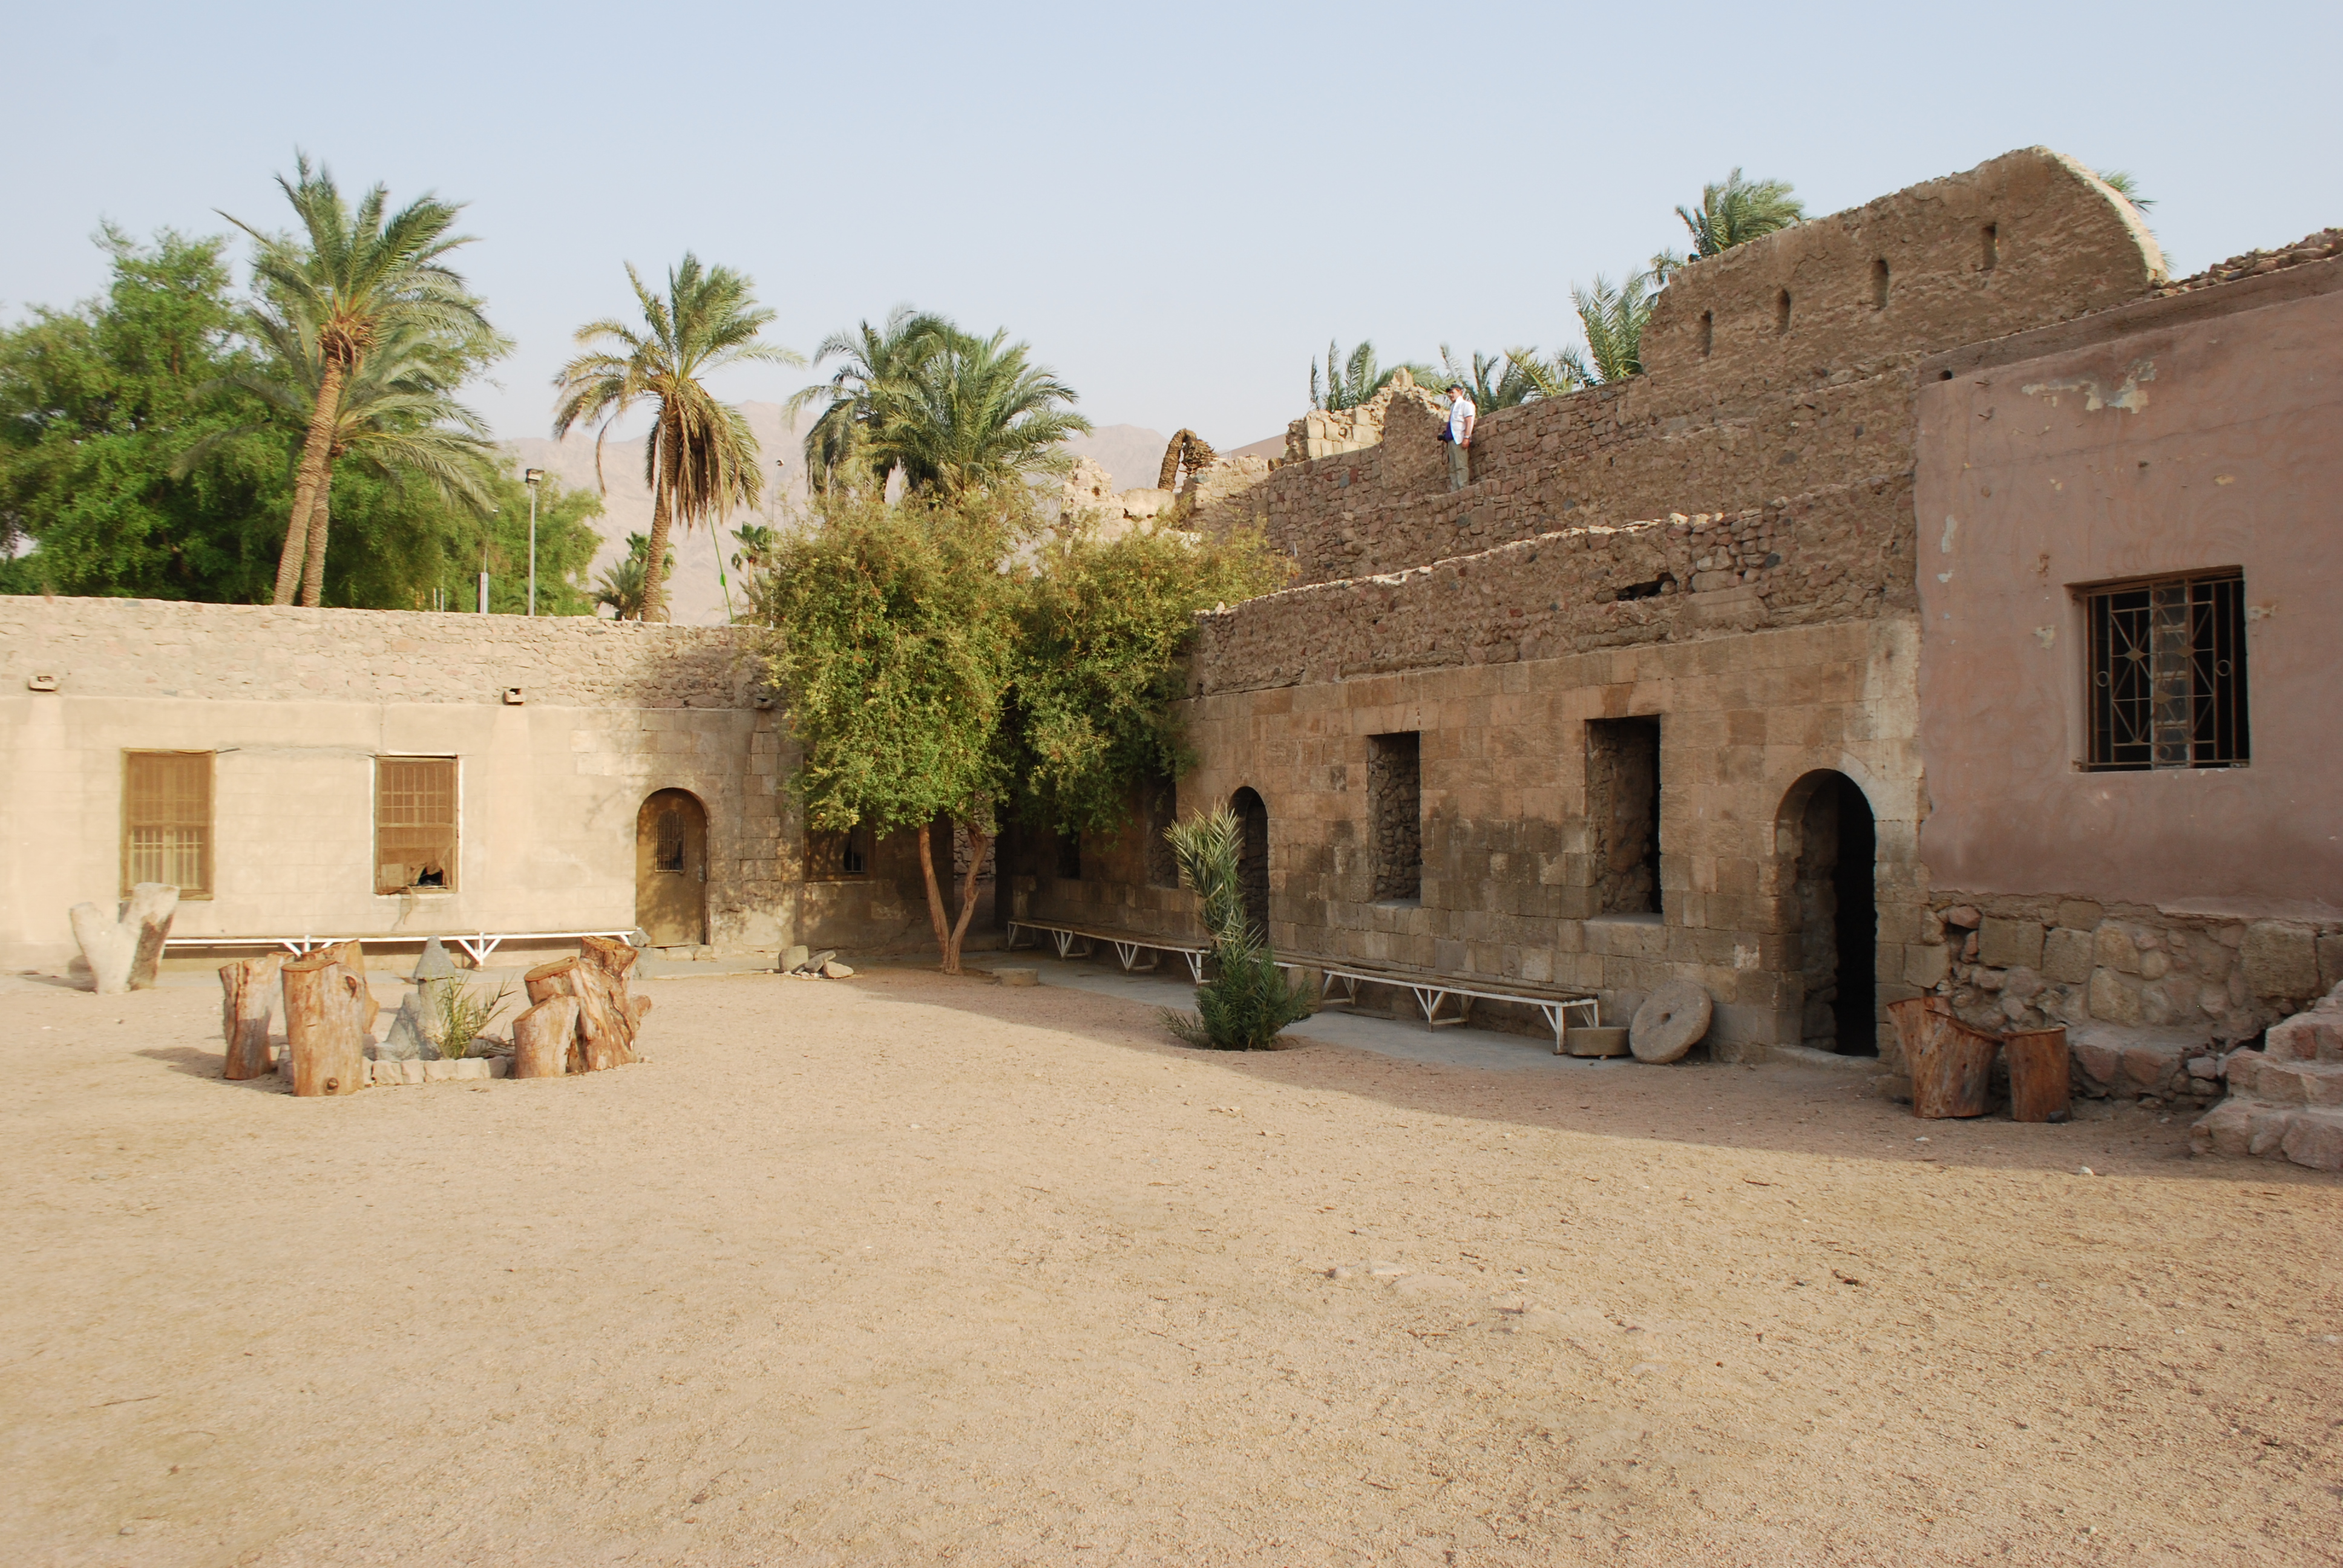 Le fort. Парк с руинами крепости Акаба. Aqaba Fortress.